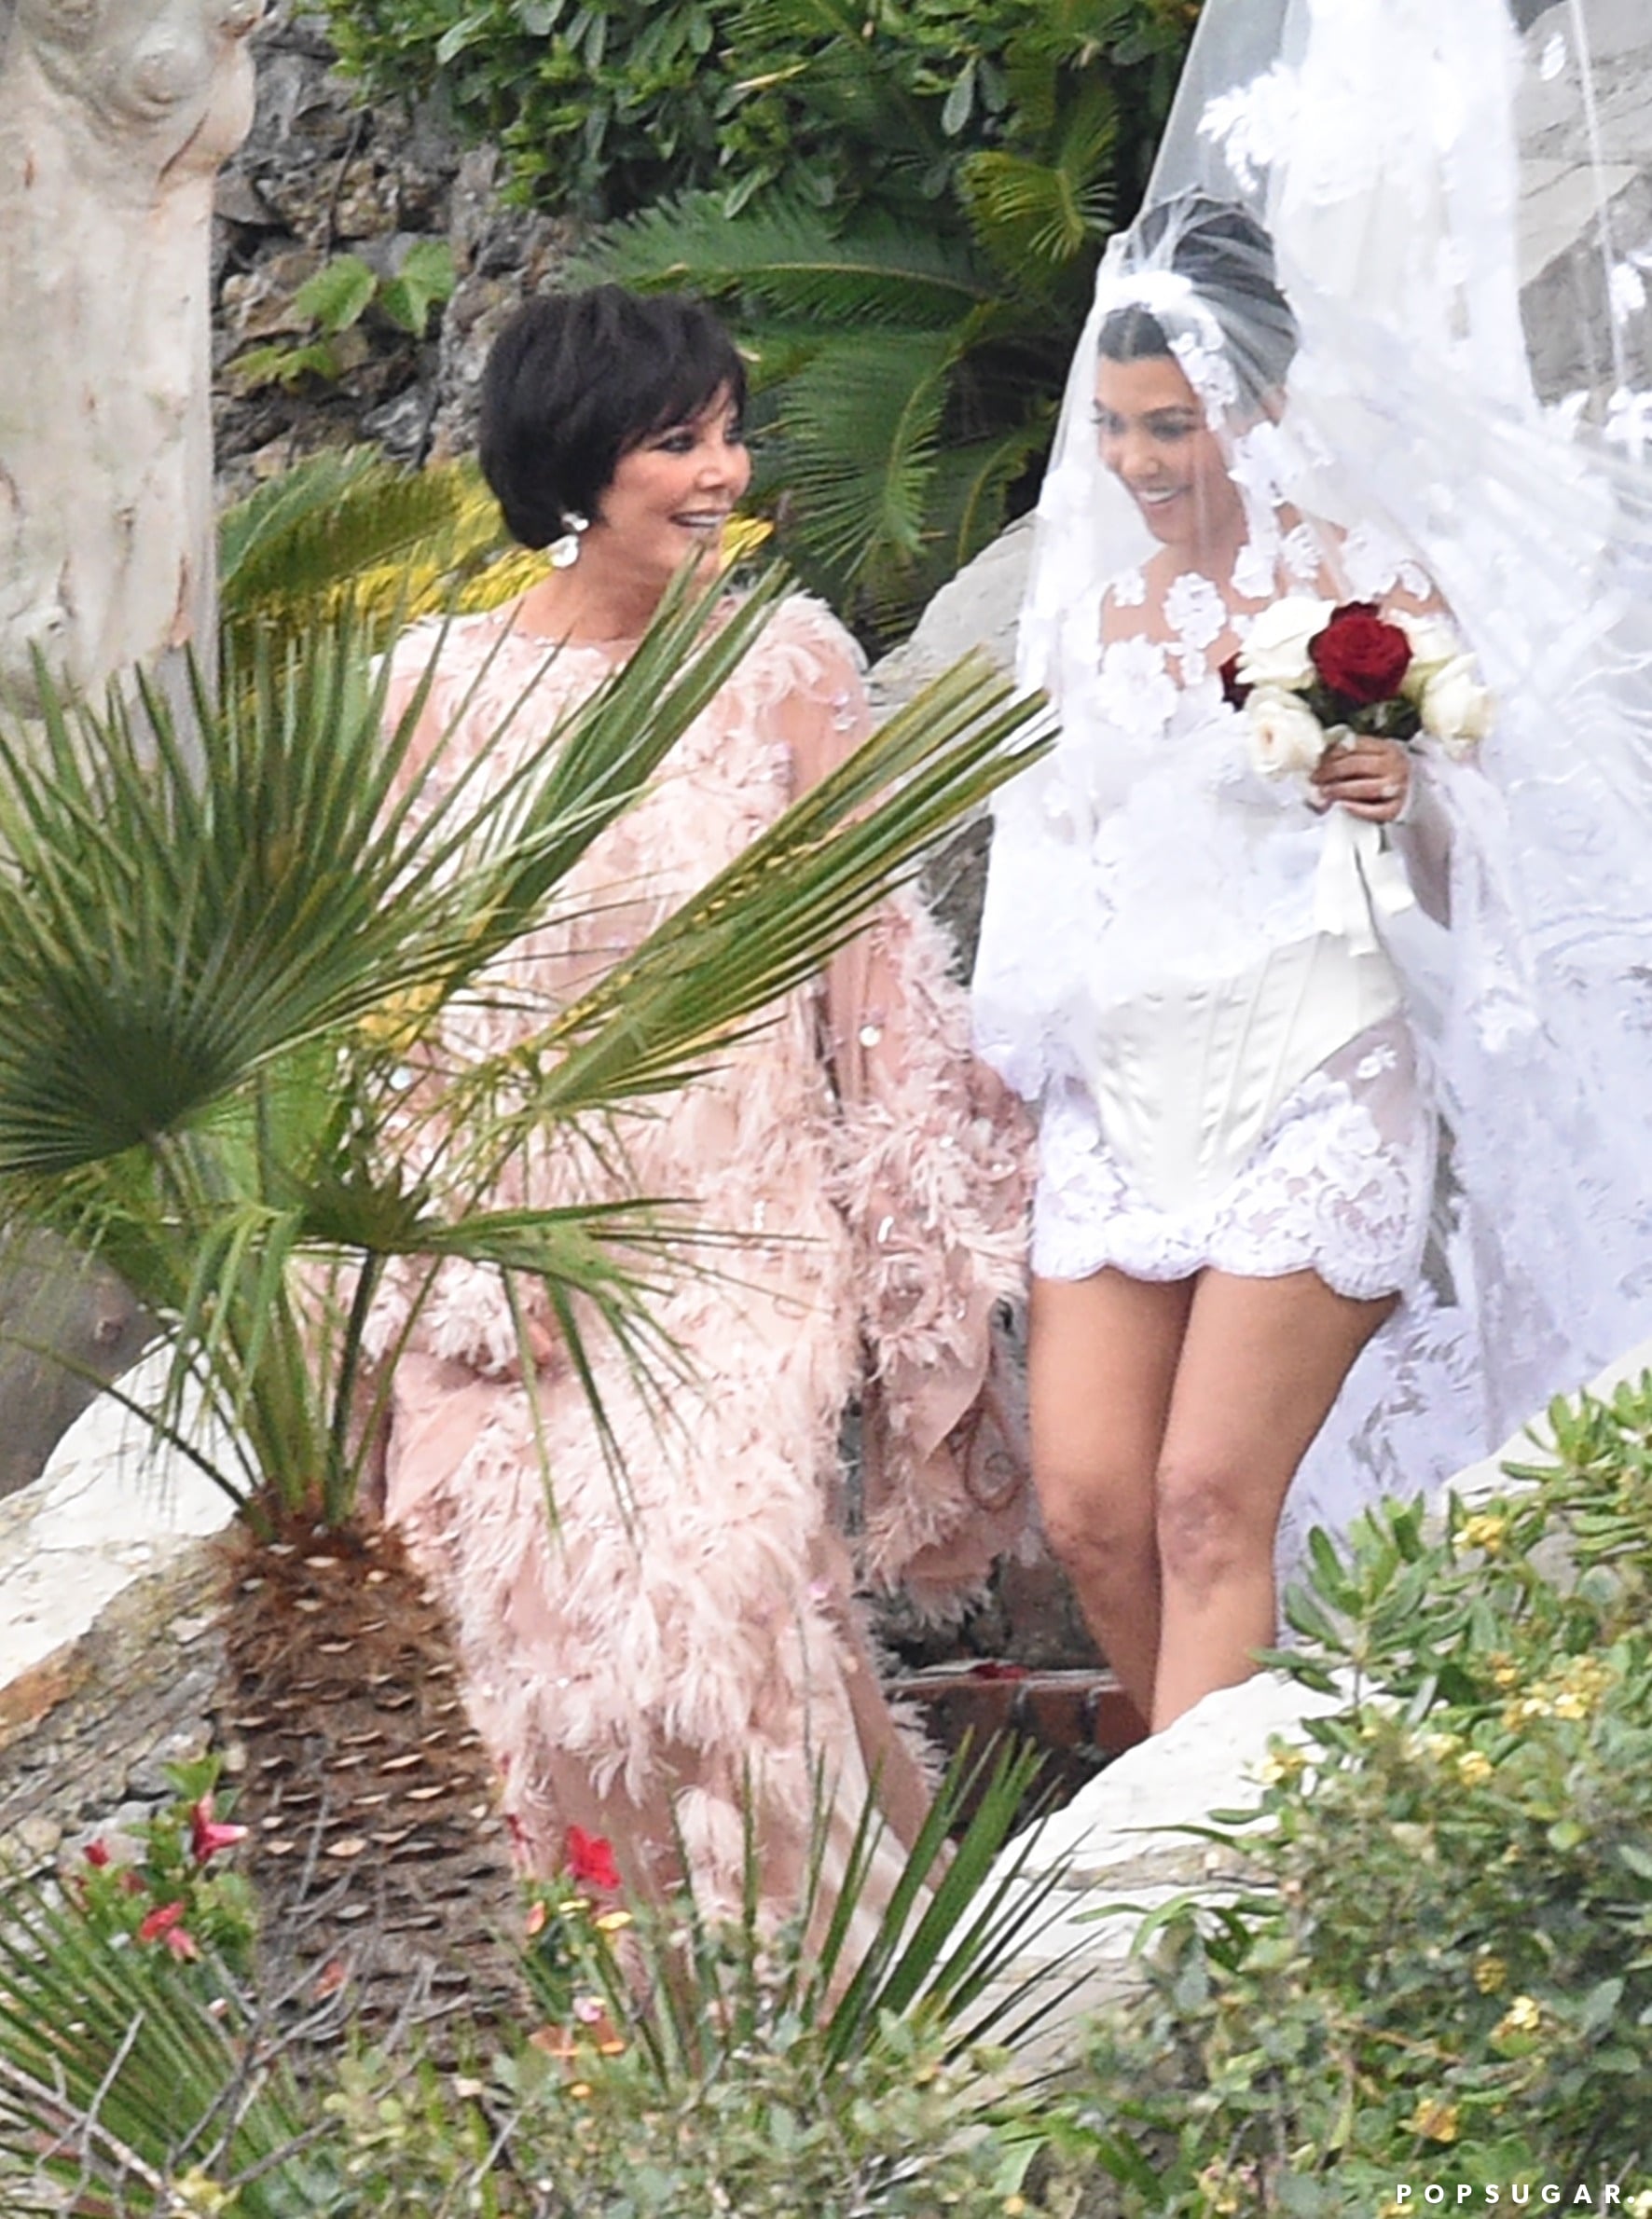 Khloé Kardashian Shades Sister Kourtney's Wedding Dress: 'It Was Fine'